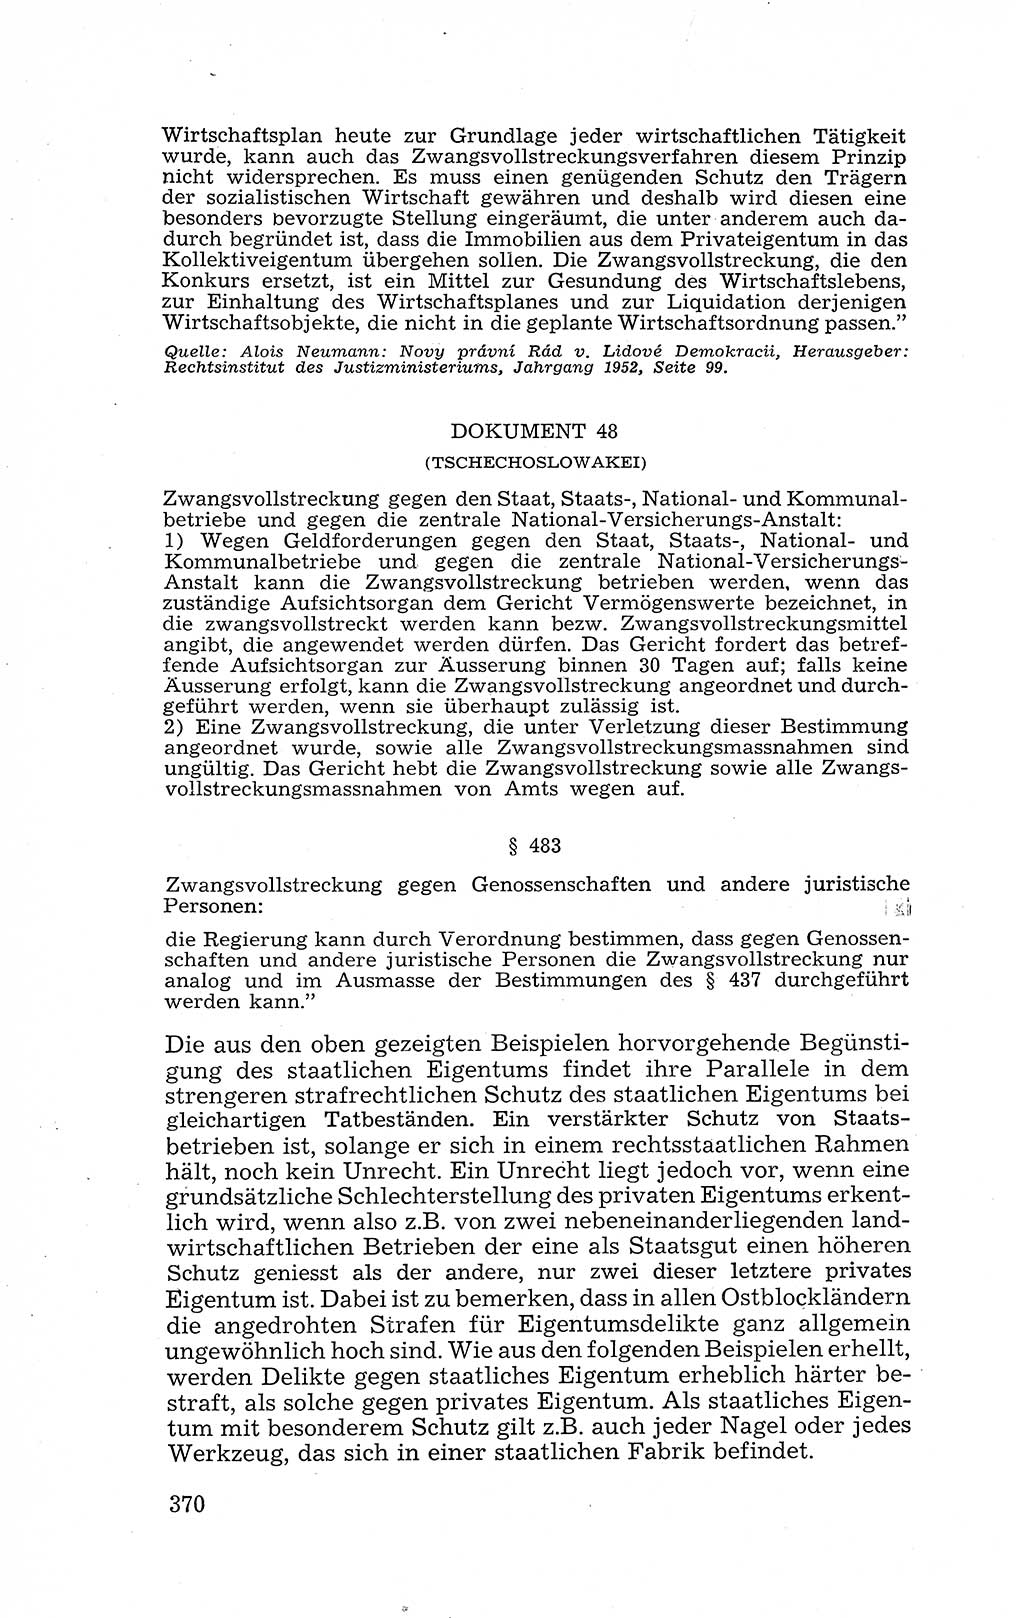 Recht in Fesseln, Dokumente, Internationale Juristen-Kommission [Bundesrepublik Deutschland (BRD)] 1955, Seite 370 (R. Dok. IJK BRD 1955, S. 370)